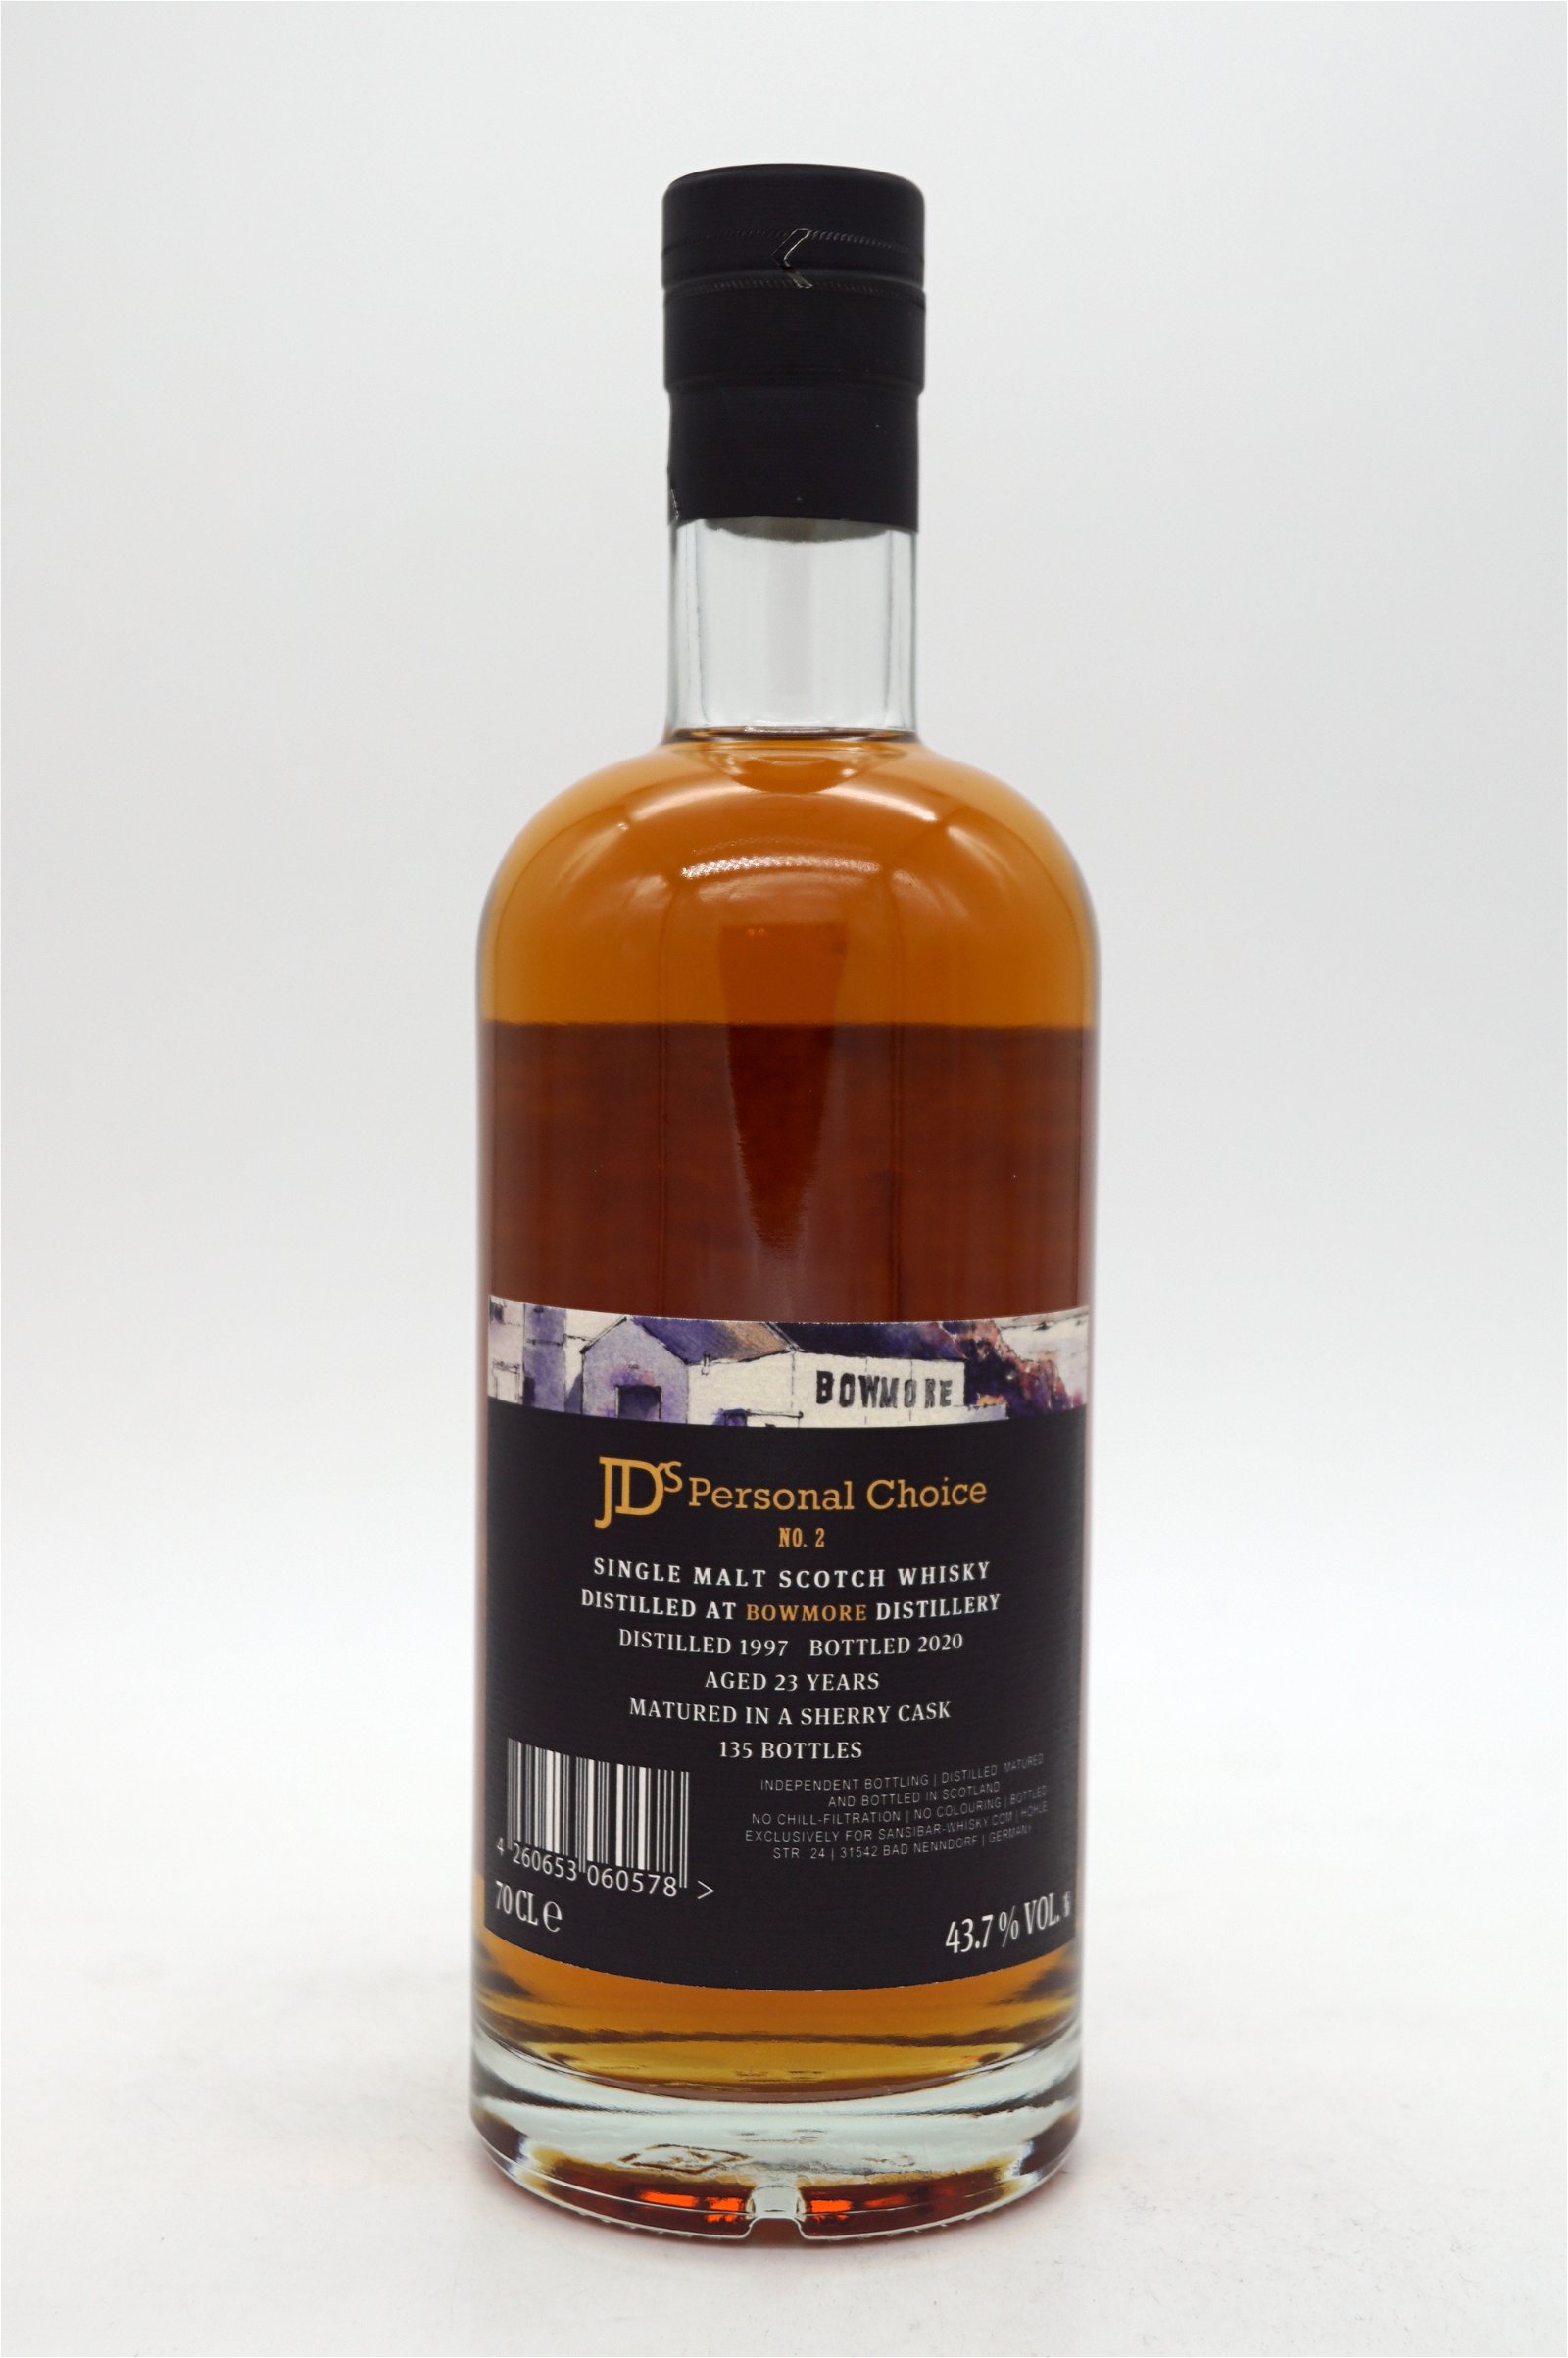 JD´s Choice 23 Jahre Bowmore 1997/2020 Sherry Cask Single Malt Scotch Whisky